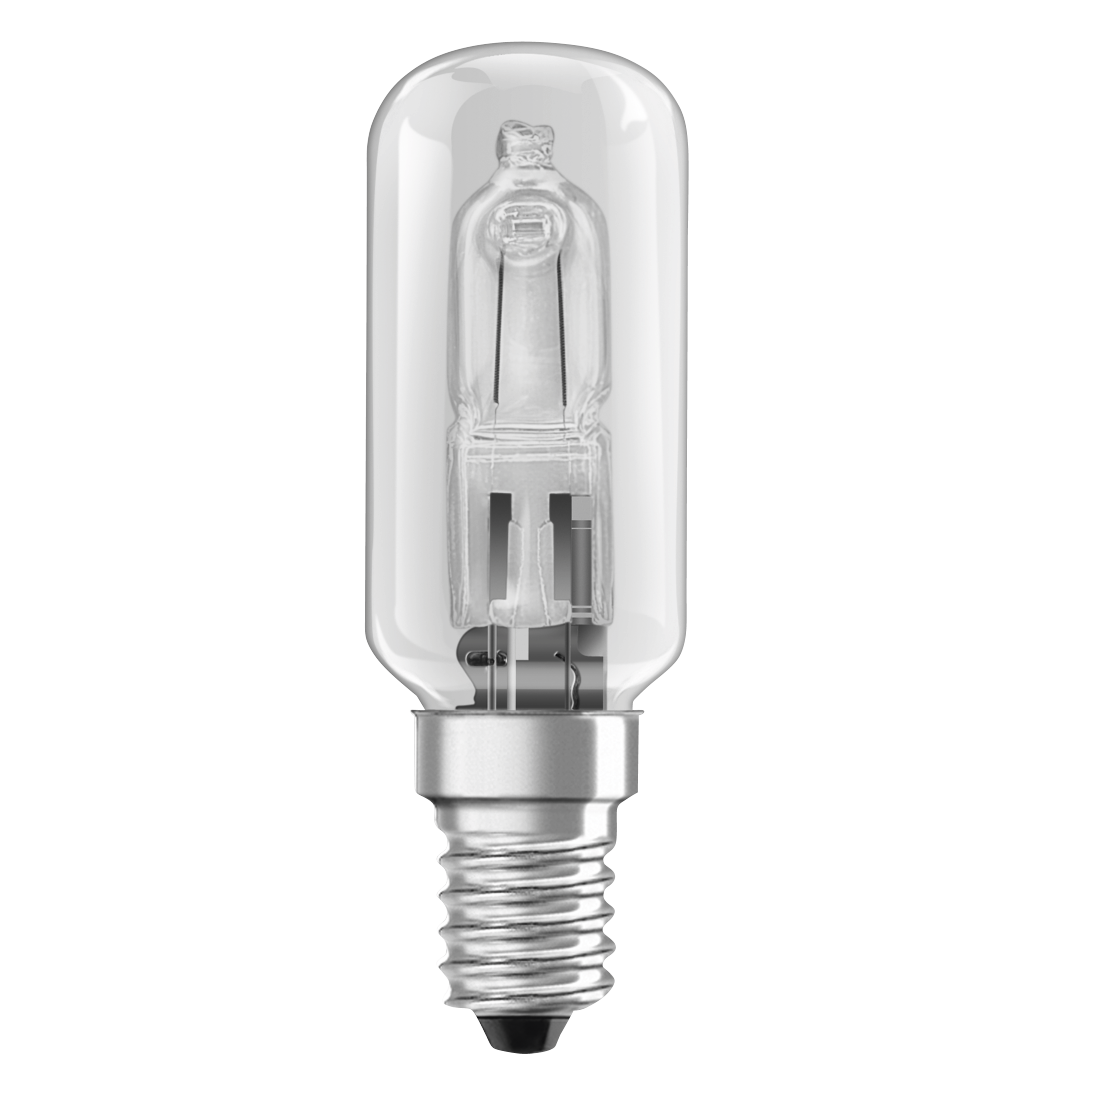 abx High-Res Image - Xavax, Halogen Bulb for Extractor Hoods, 25 W, tubular, clear, E14